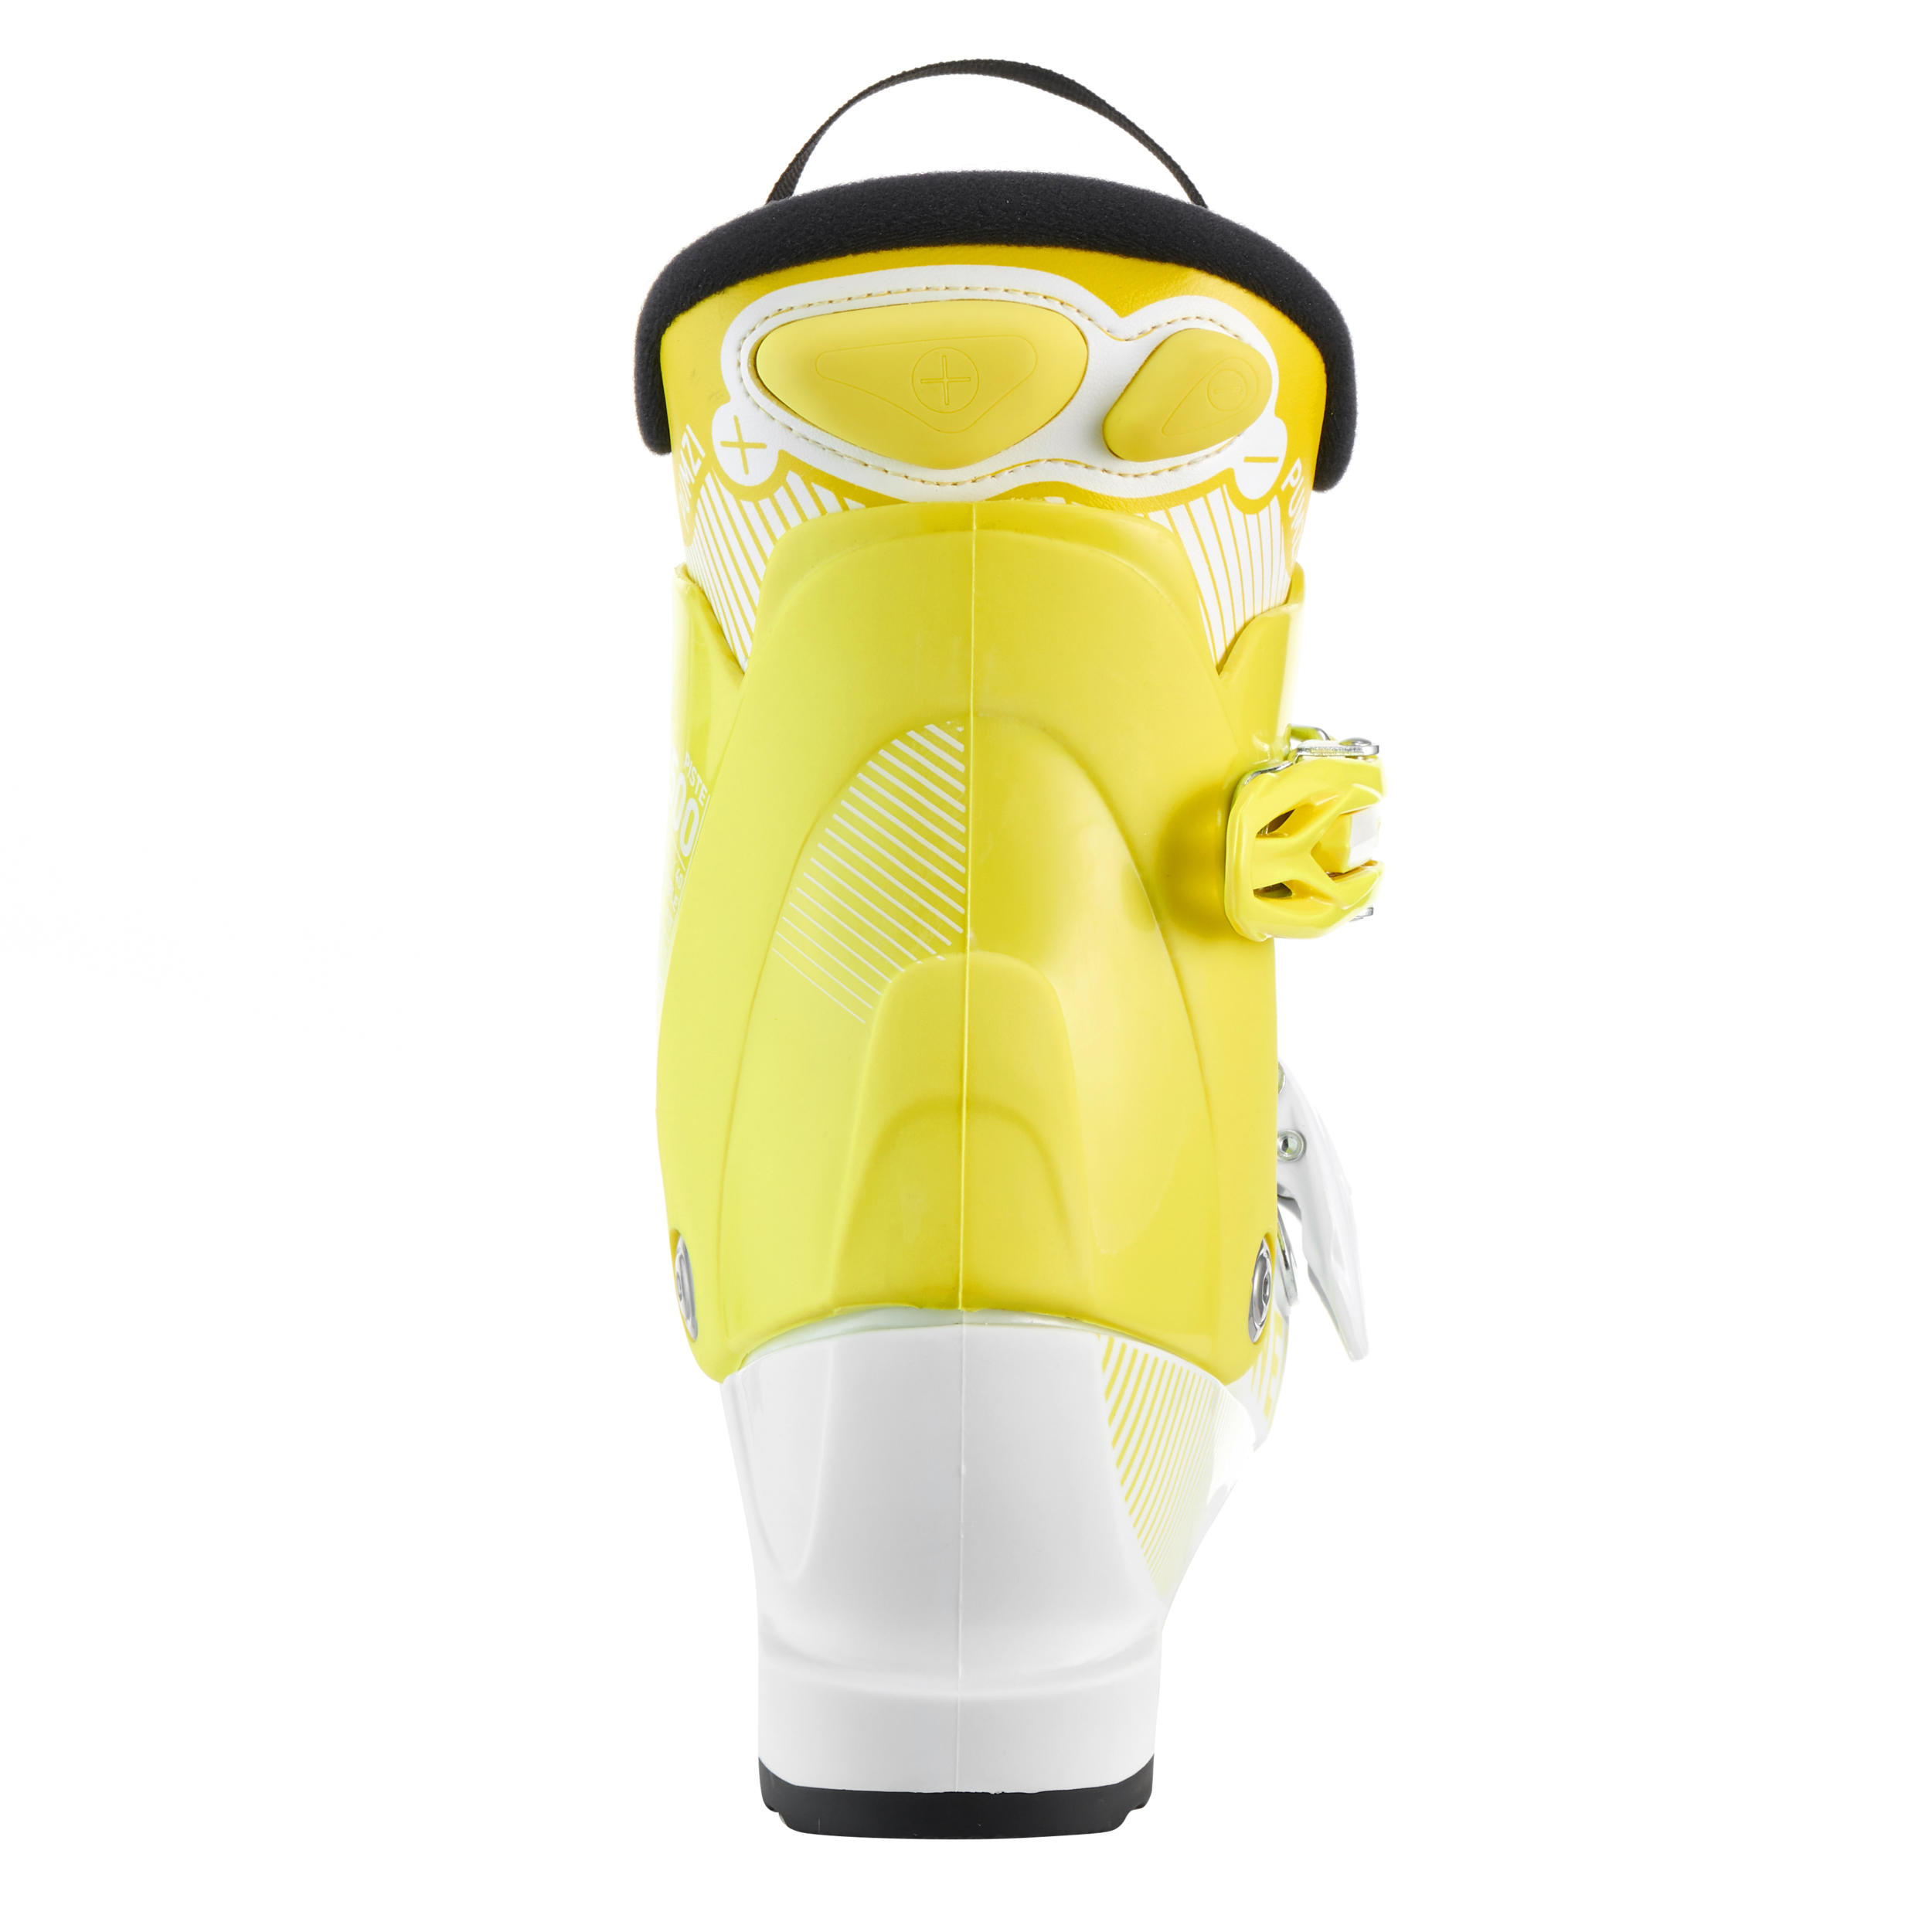 Kids’ Downhill Ski Boots - Pumzi 500 Yellow - WEDZE